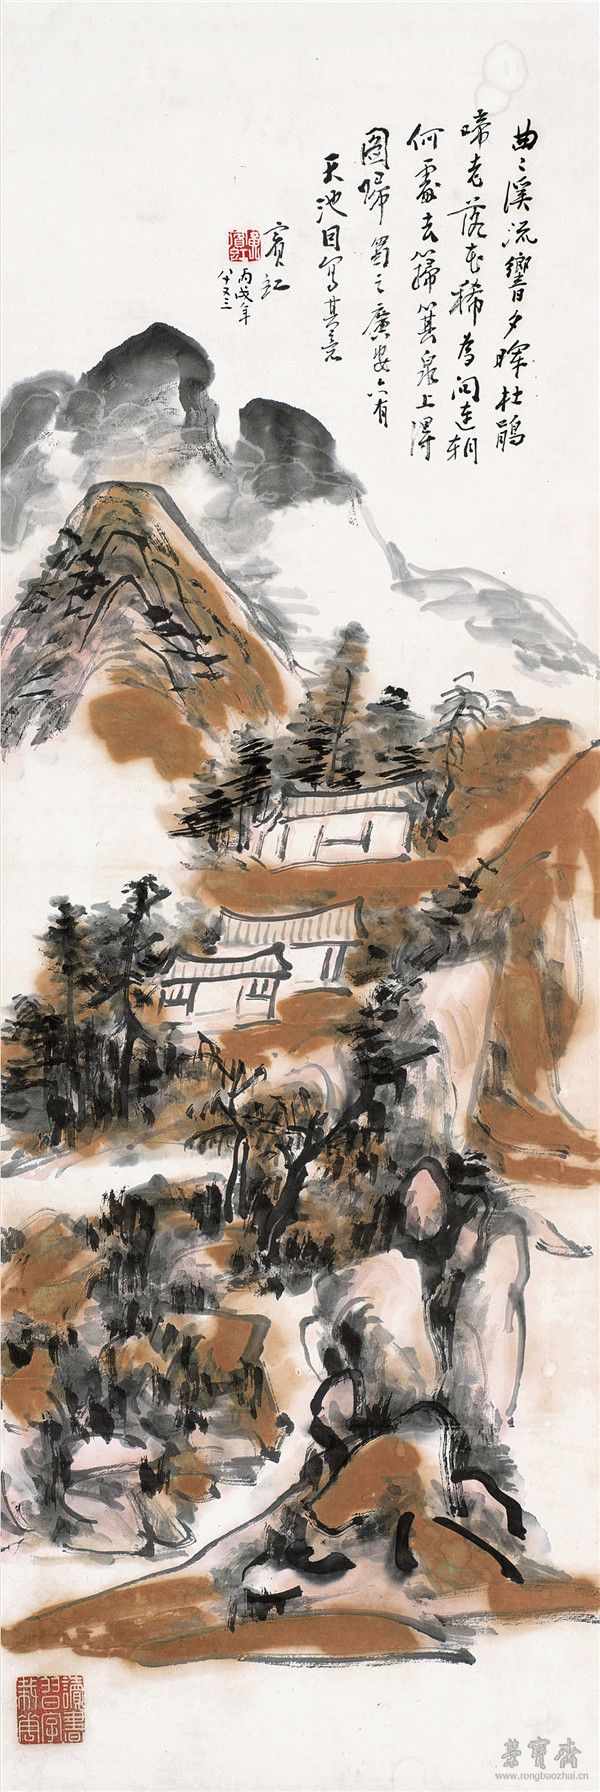 黄宾虹 1865-1955  天池石壁图